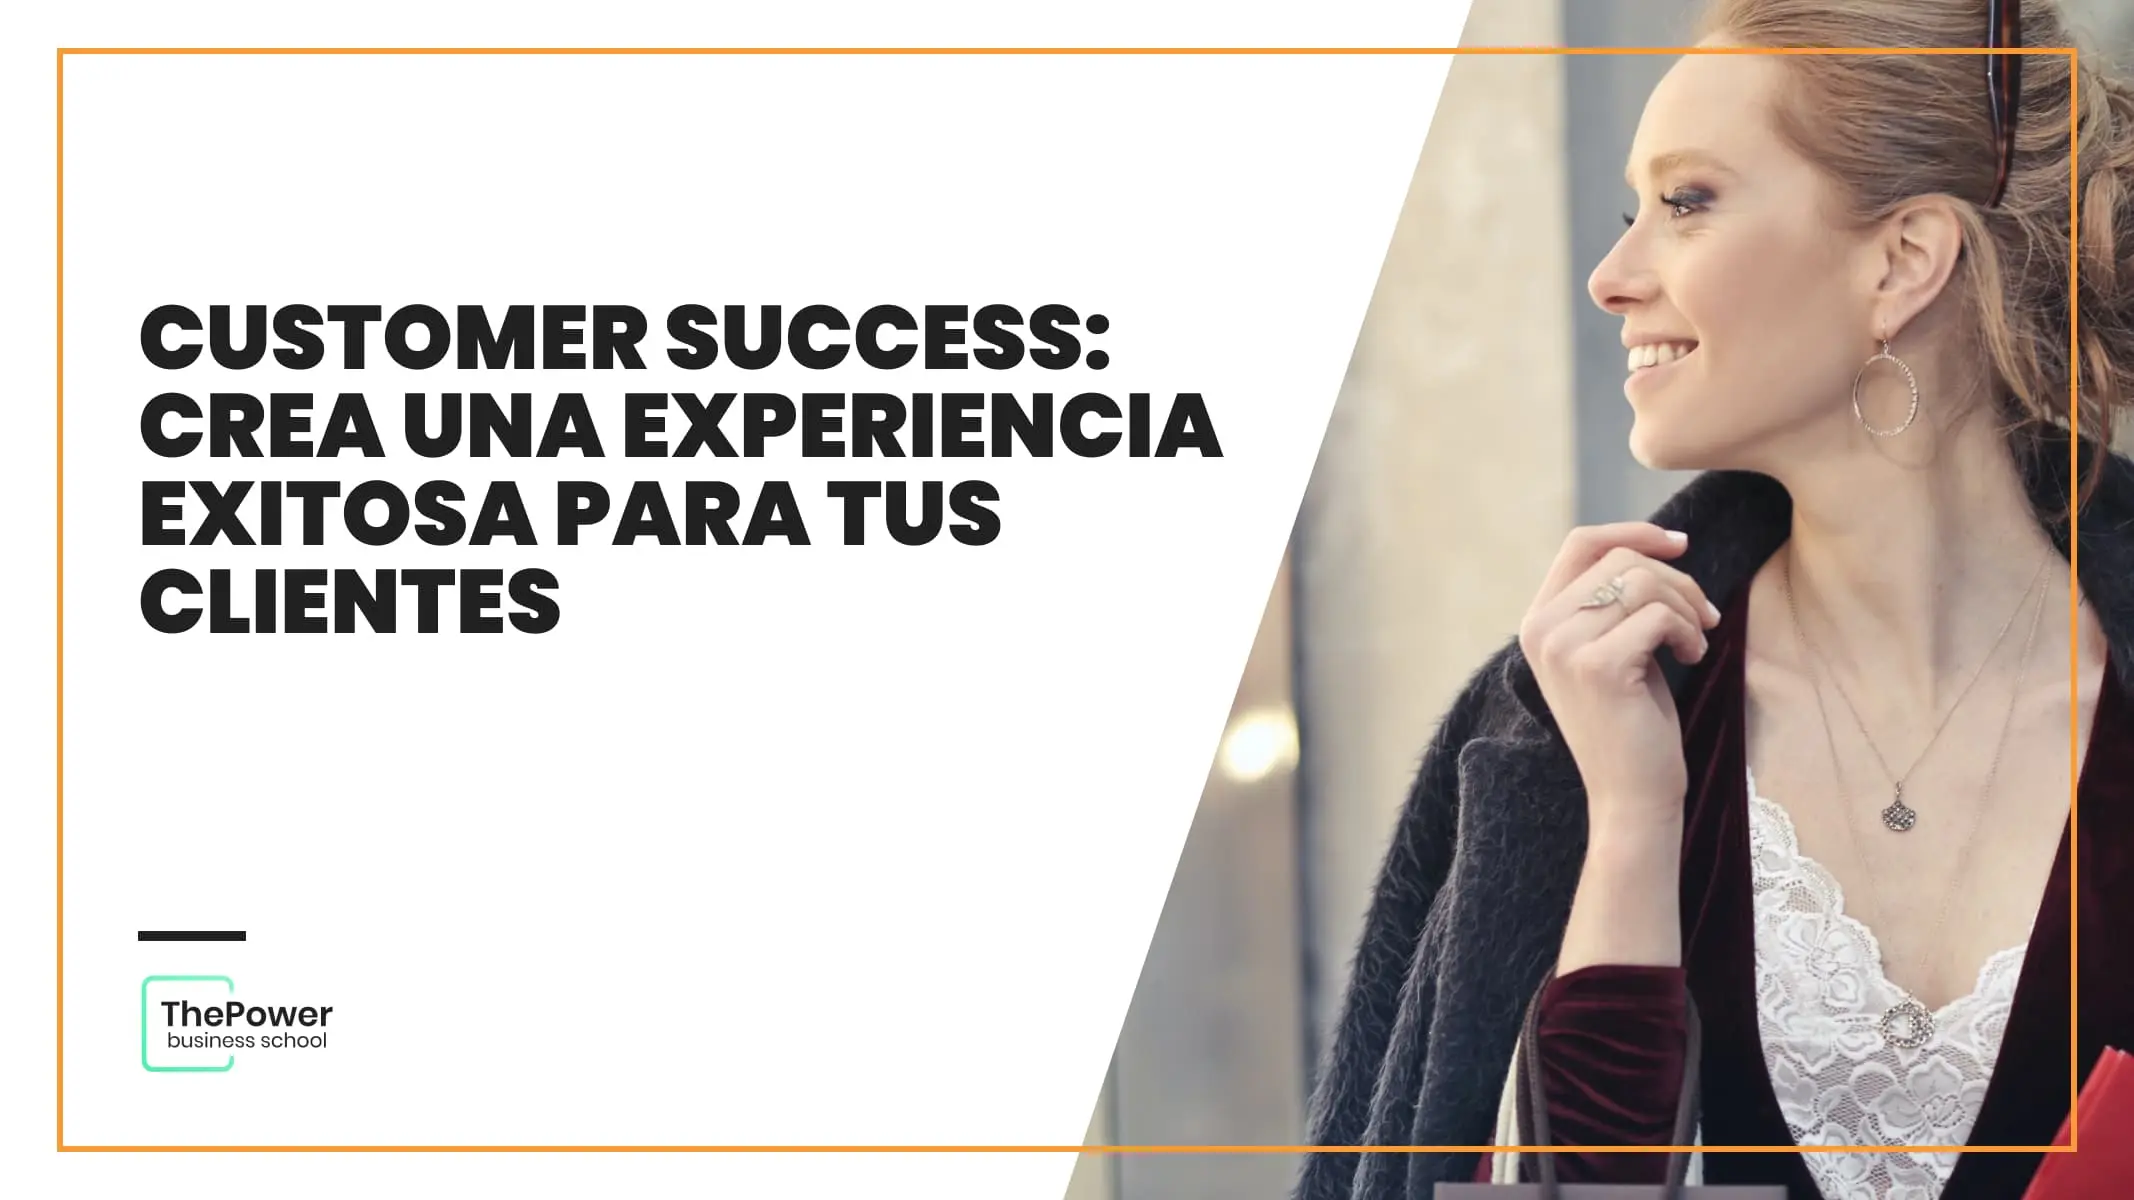 Customer Success crea una experiencia exitosa para tus clientes